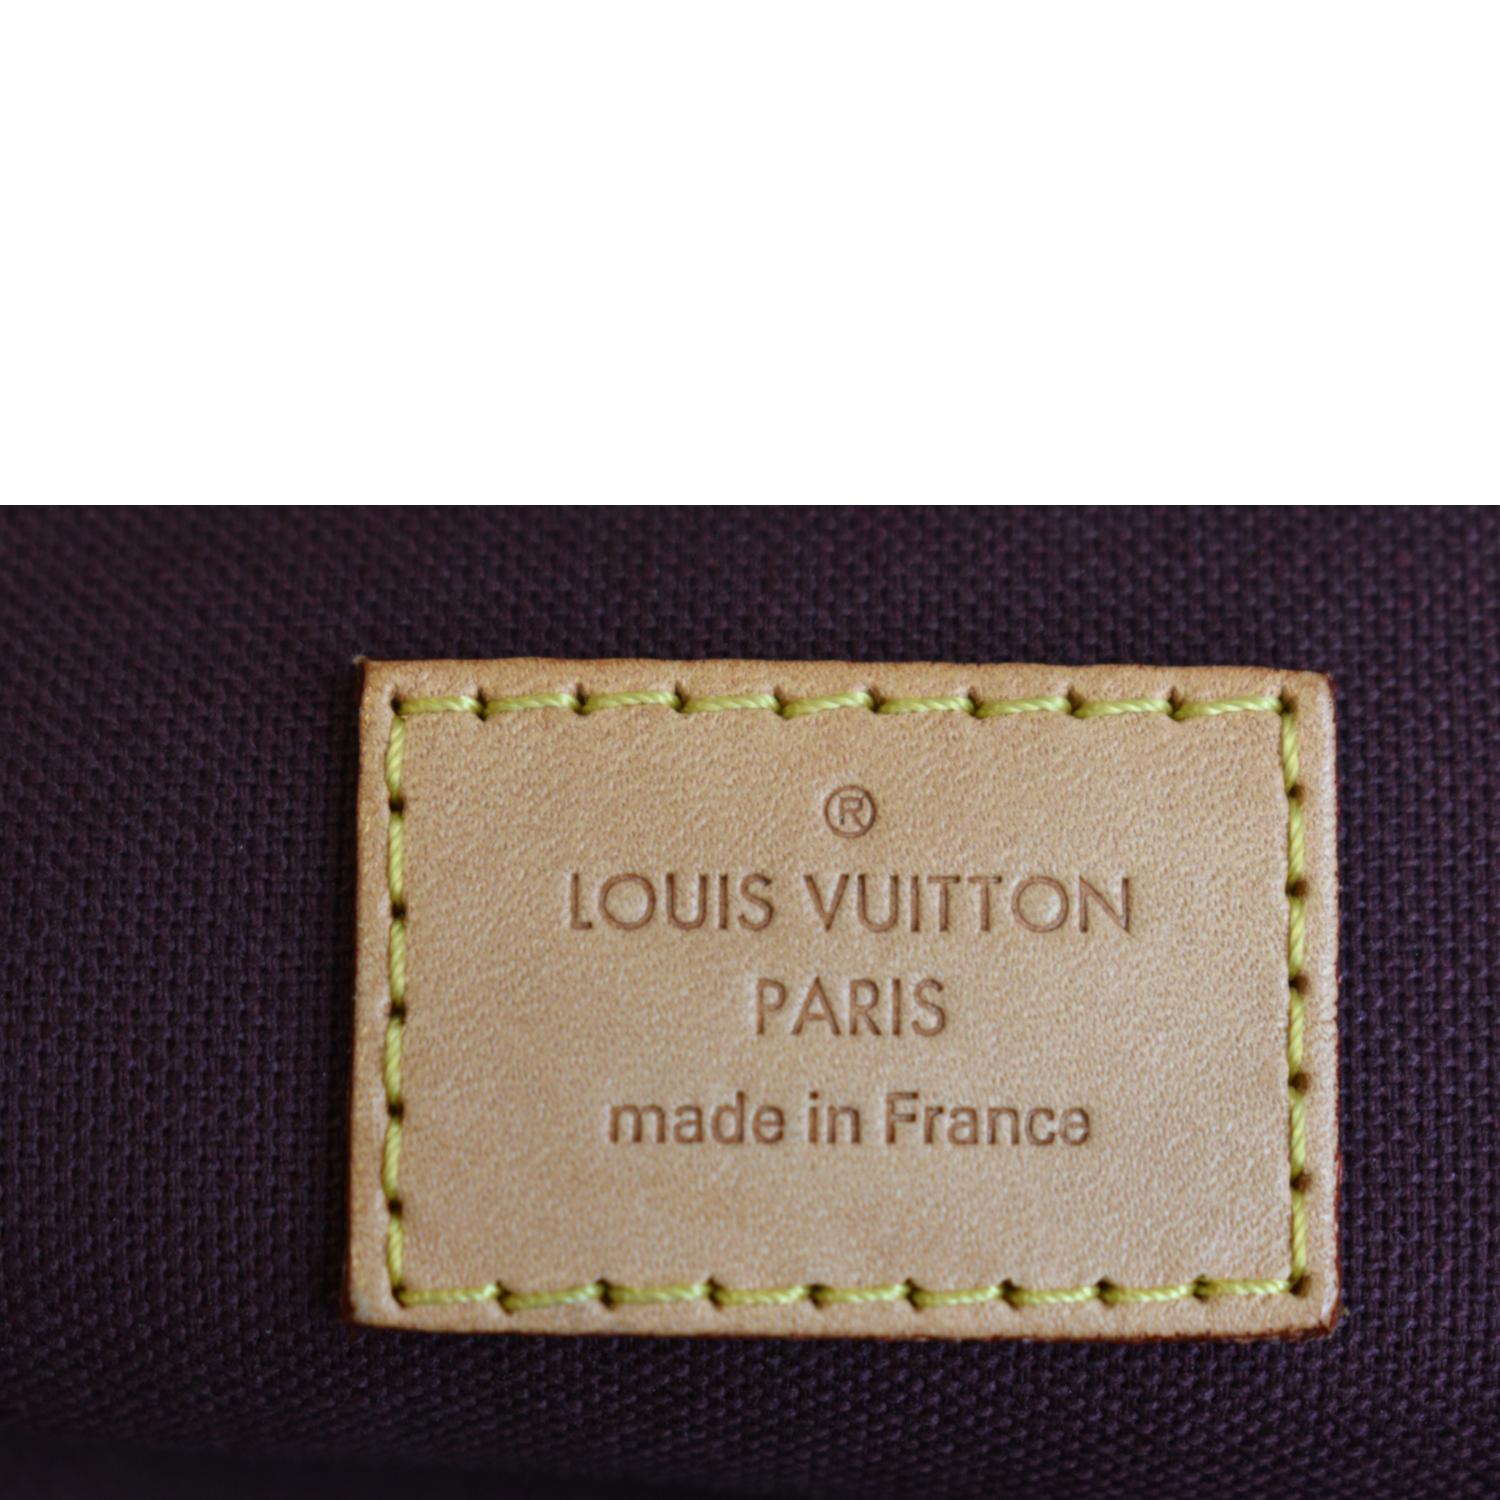 Louis Vuitton 2017 Monogram Berri PM - Brown Handle Bags, Handbags